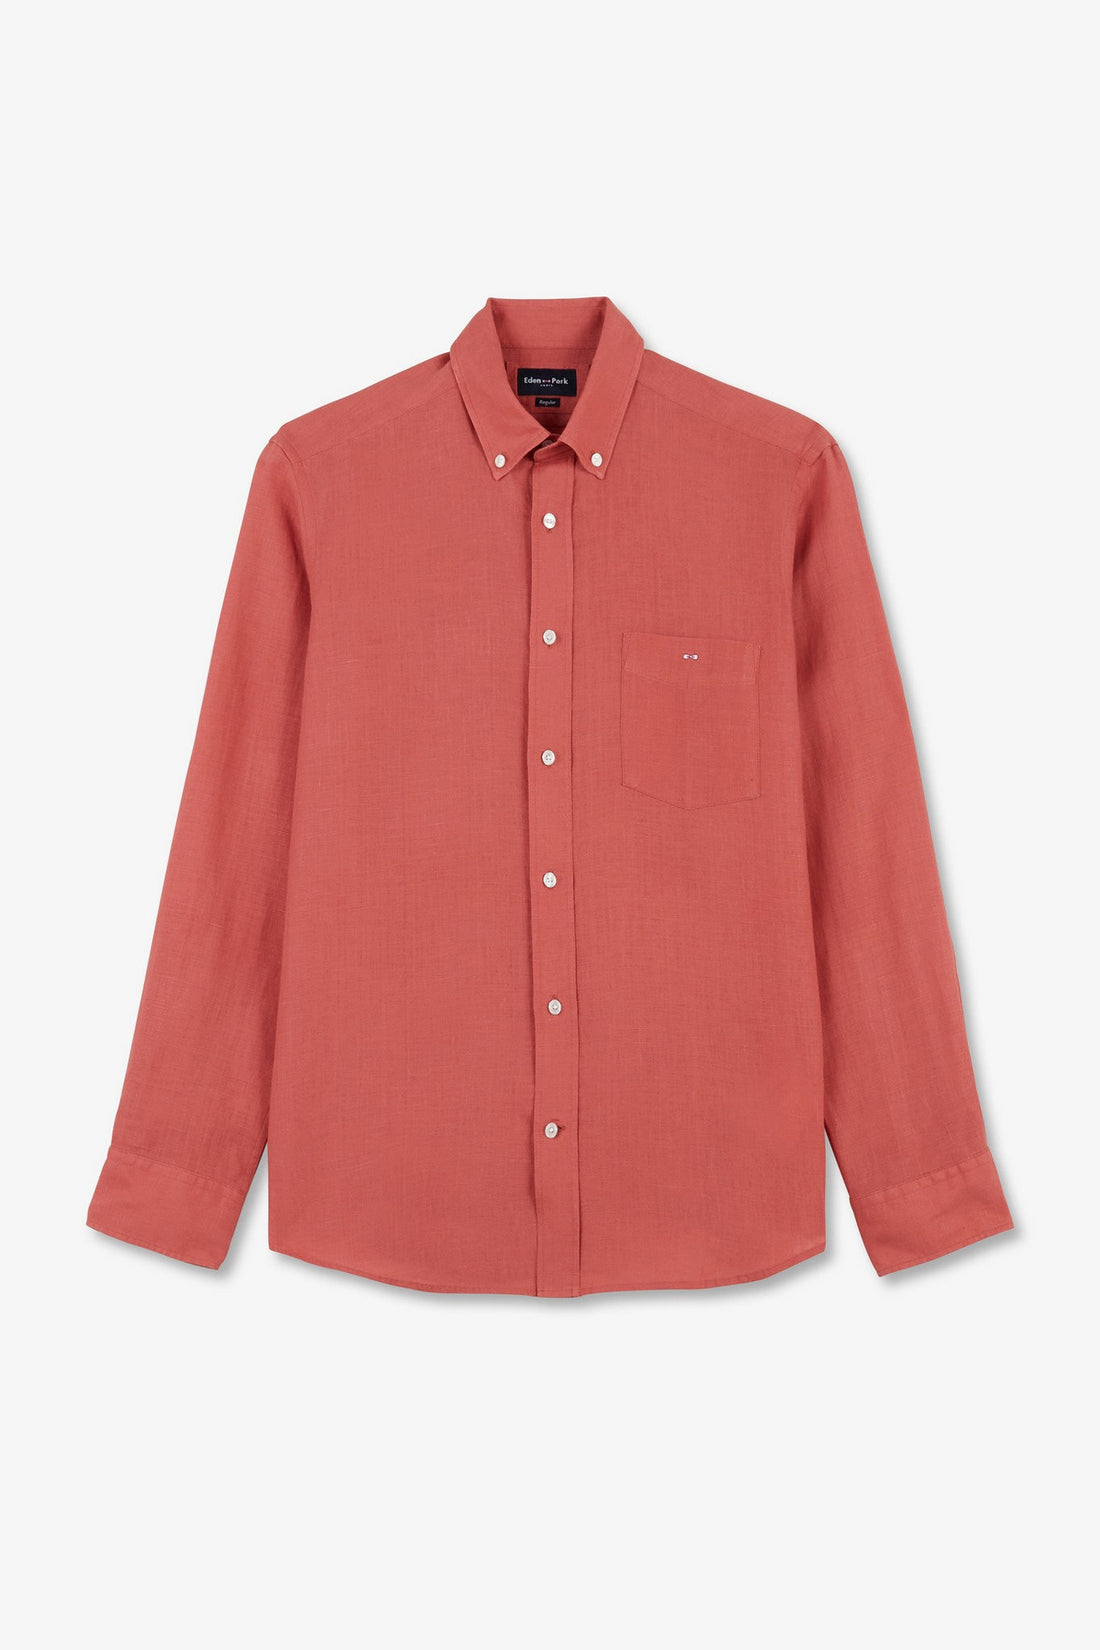 Plain Brick-Red Linen Shirt_E24CHECL0005_MAM26_02